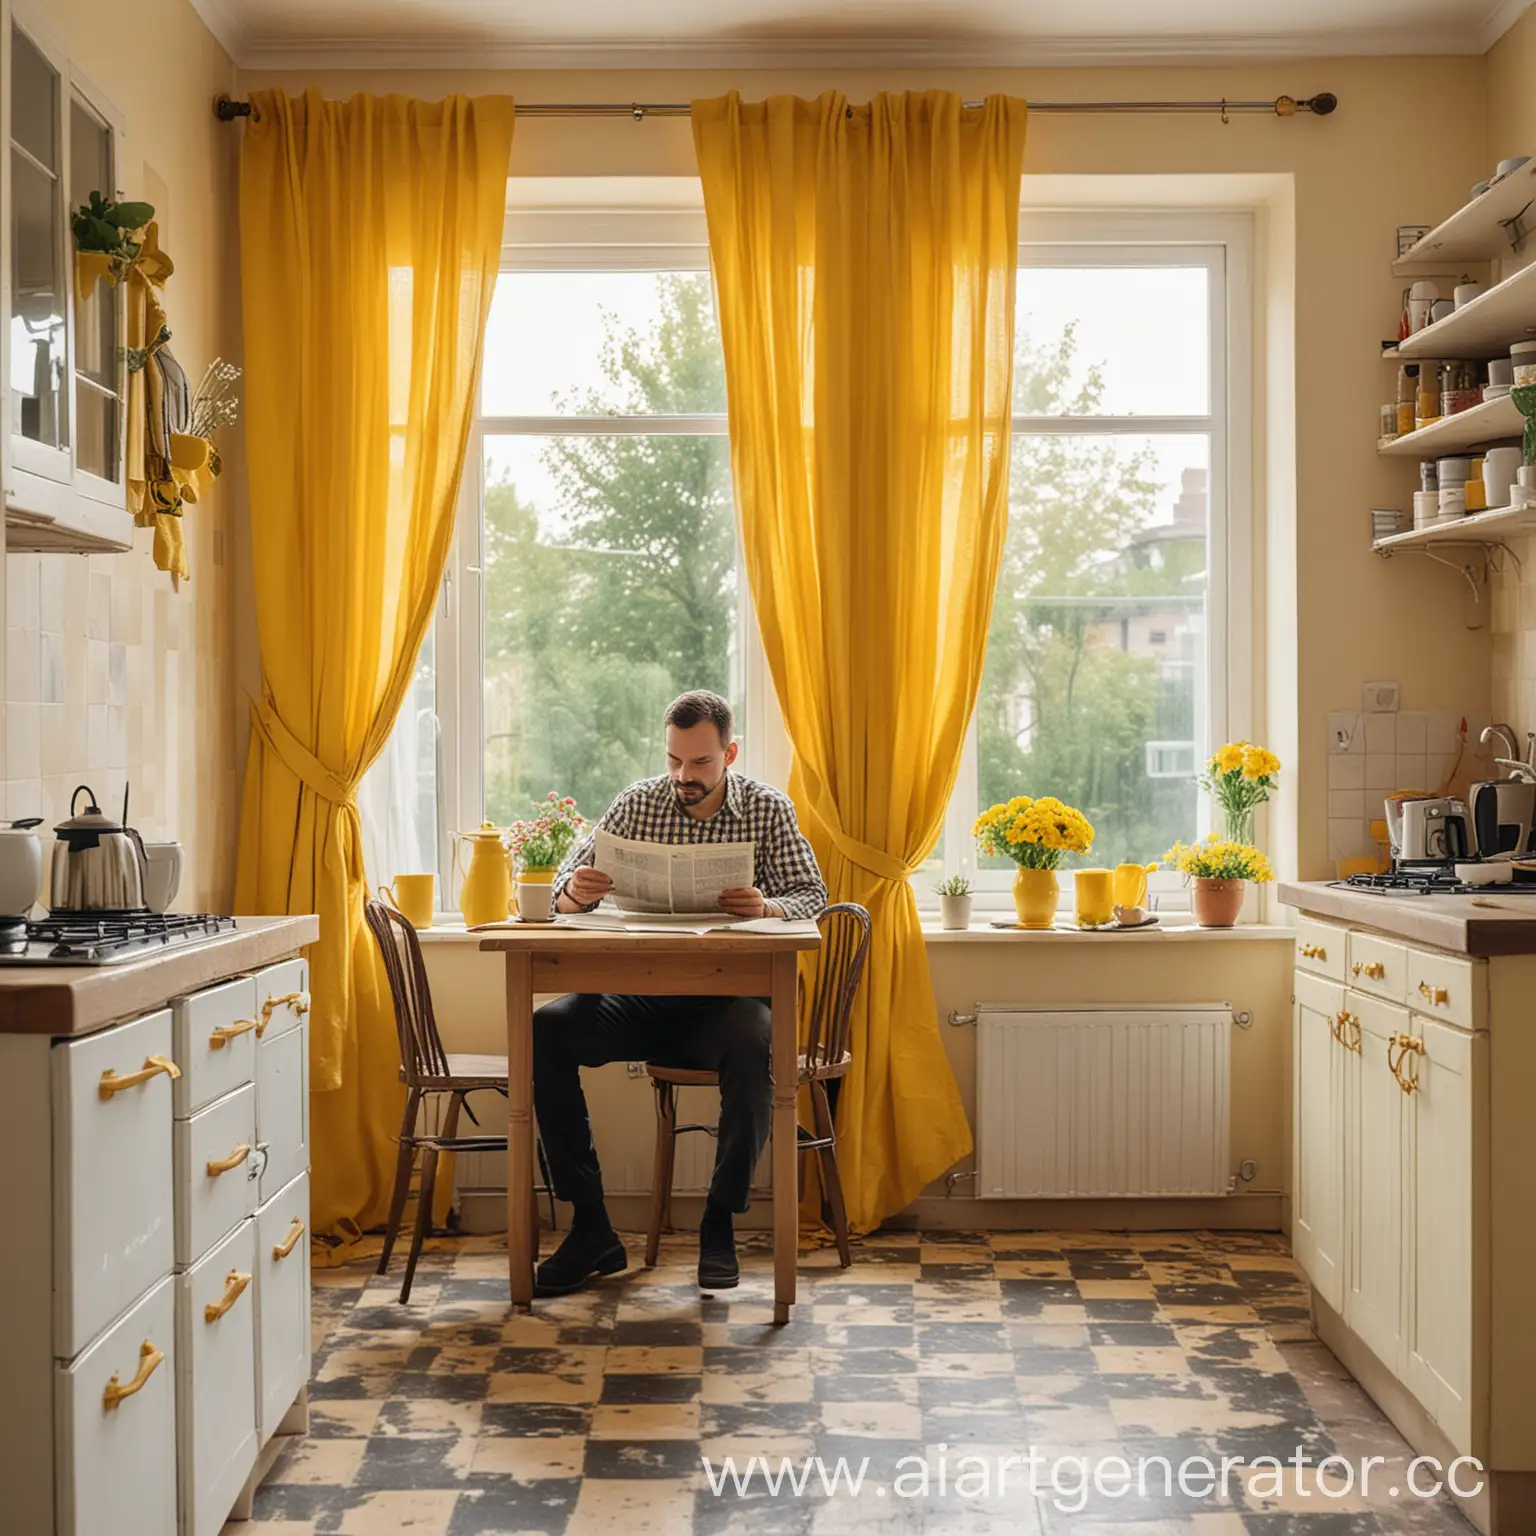 Реальная фотография. Мужчина сидит за столом на кухне читает газету и пьёт кофе. На кухне жёлтые занавески в белый горошек . На подоконнике цветы. Стены бежевые.